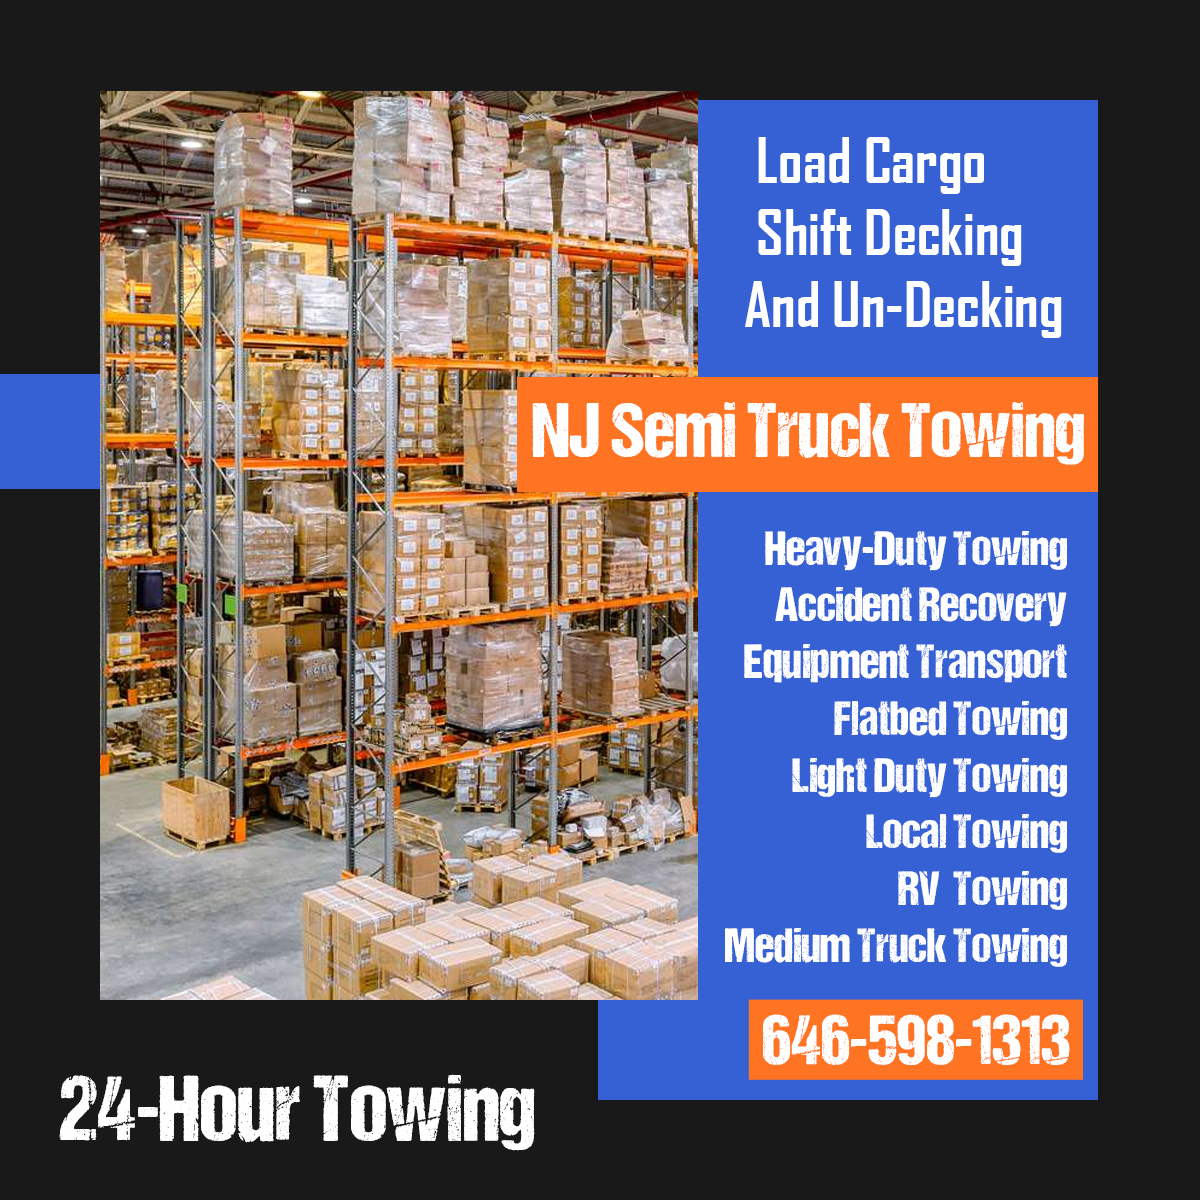 NJ Semi Truck Towing